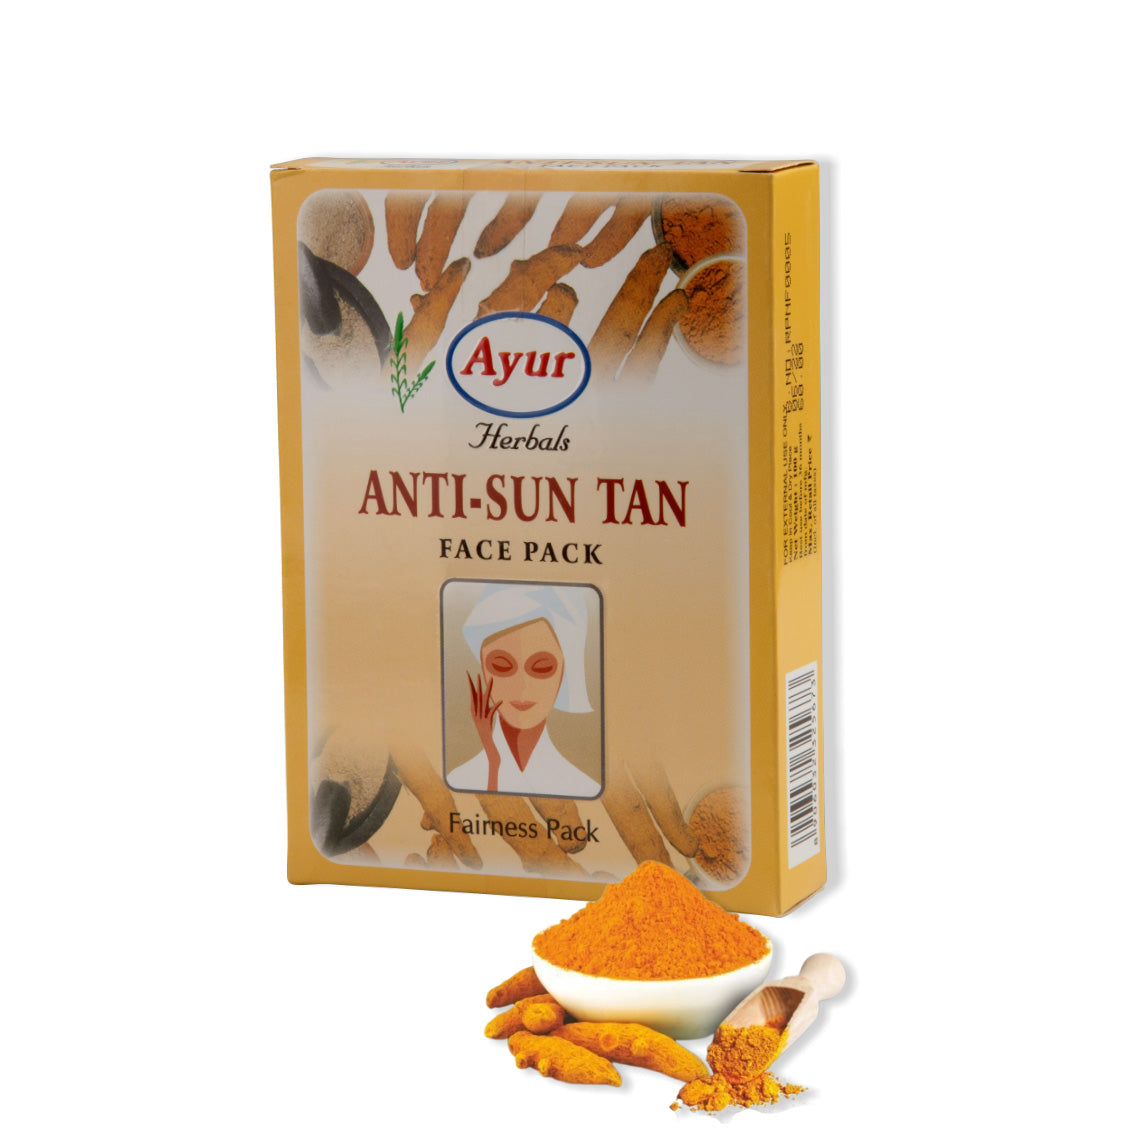 Anti-Sun Tan Face Pack